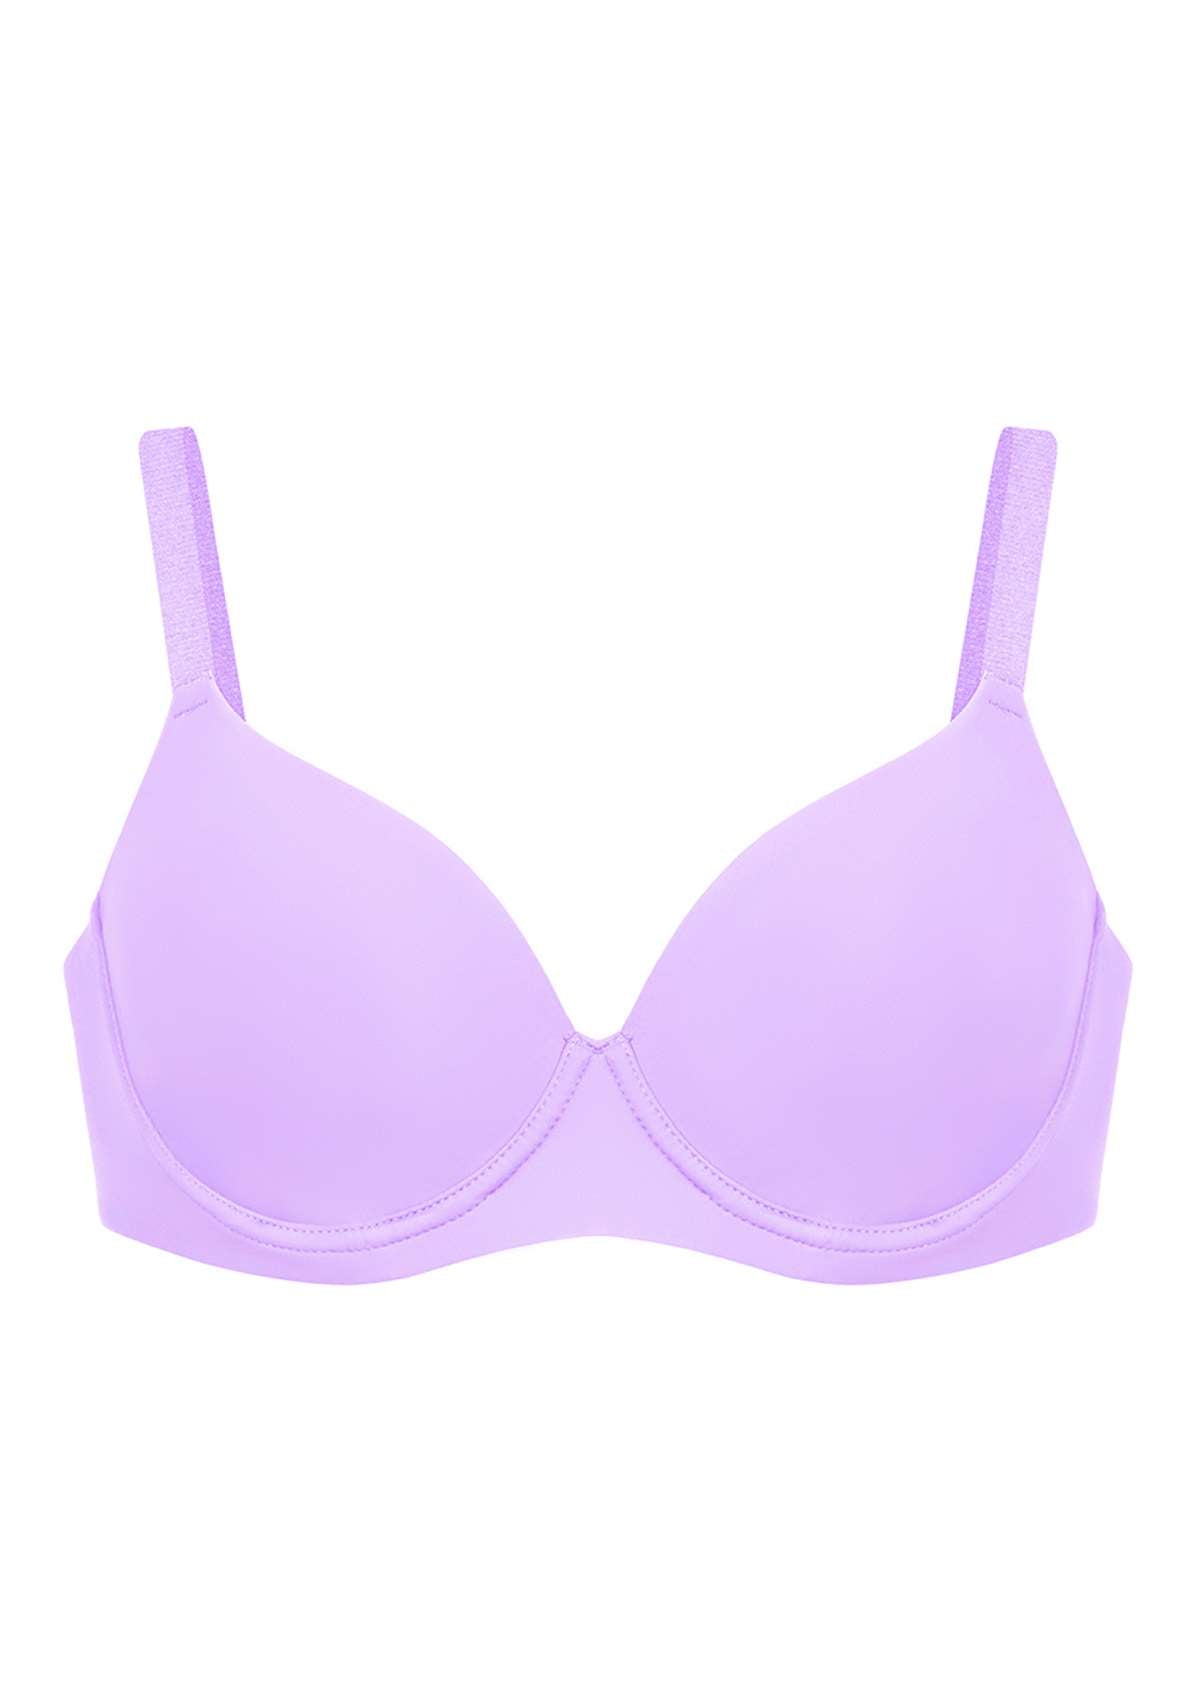 HSIA Gemma Smooth Lightly Padded T-shirt Bra For Heavy Breasts - Purple / 38 / DDD/F